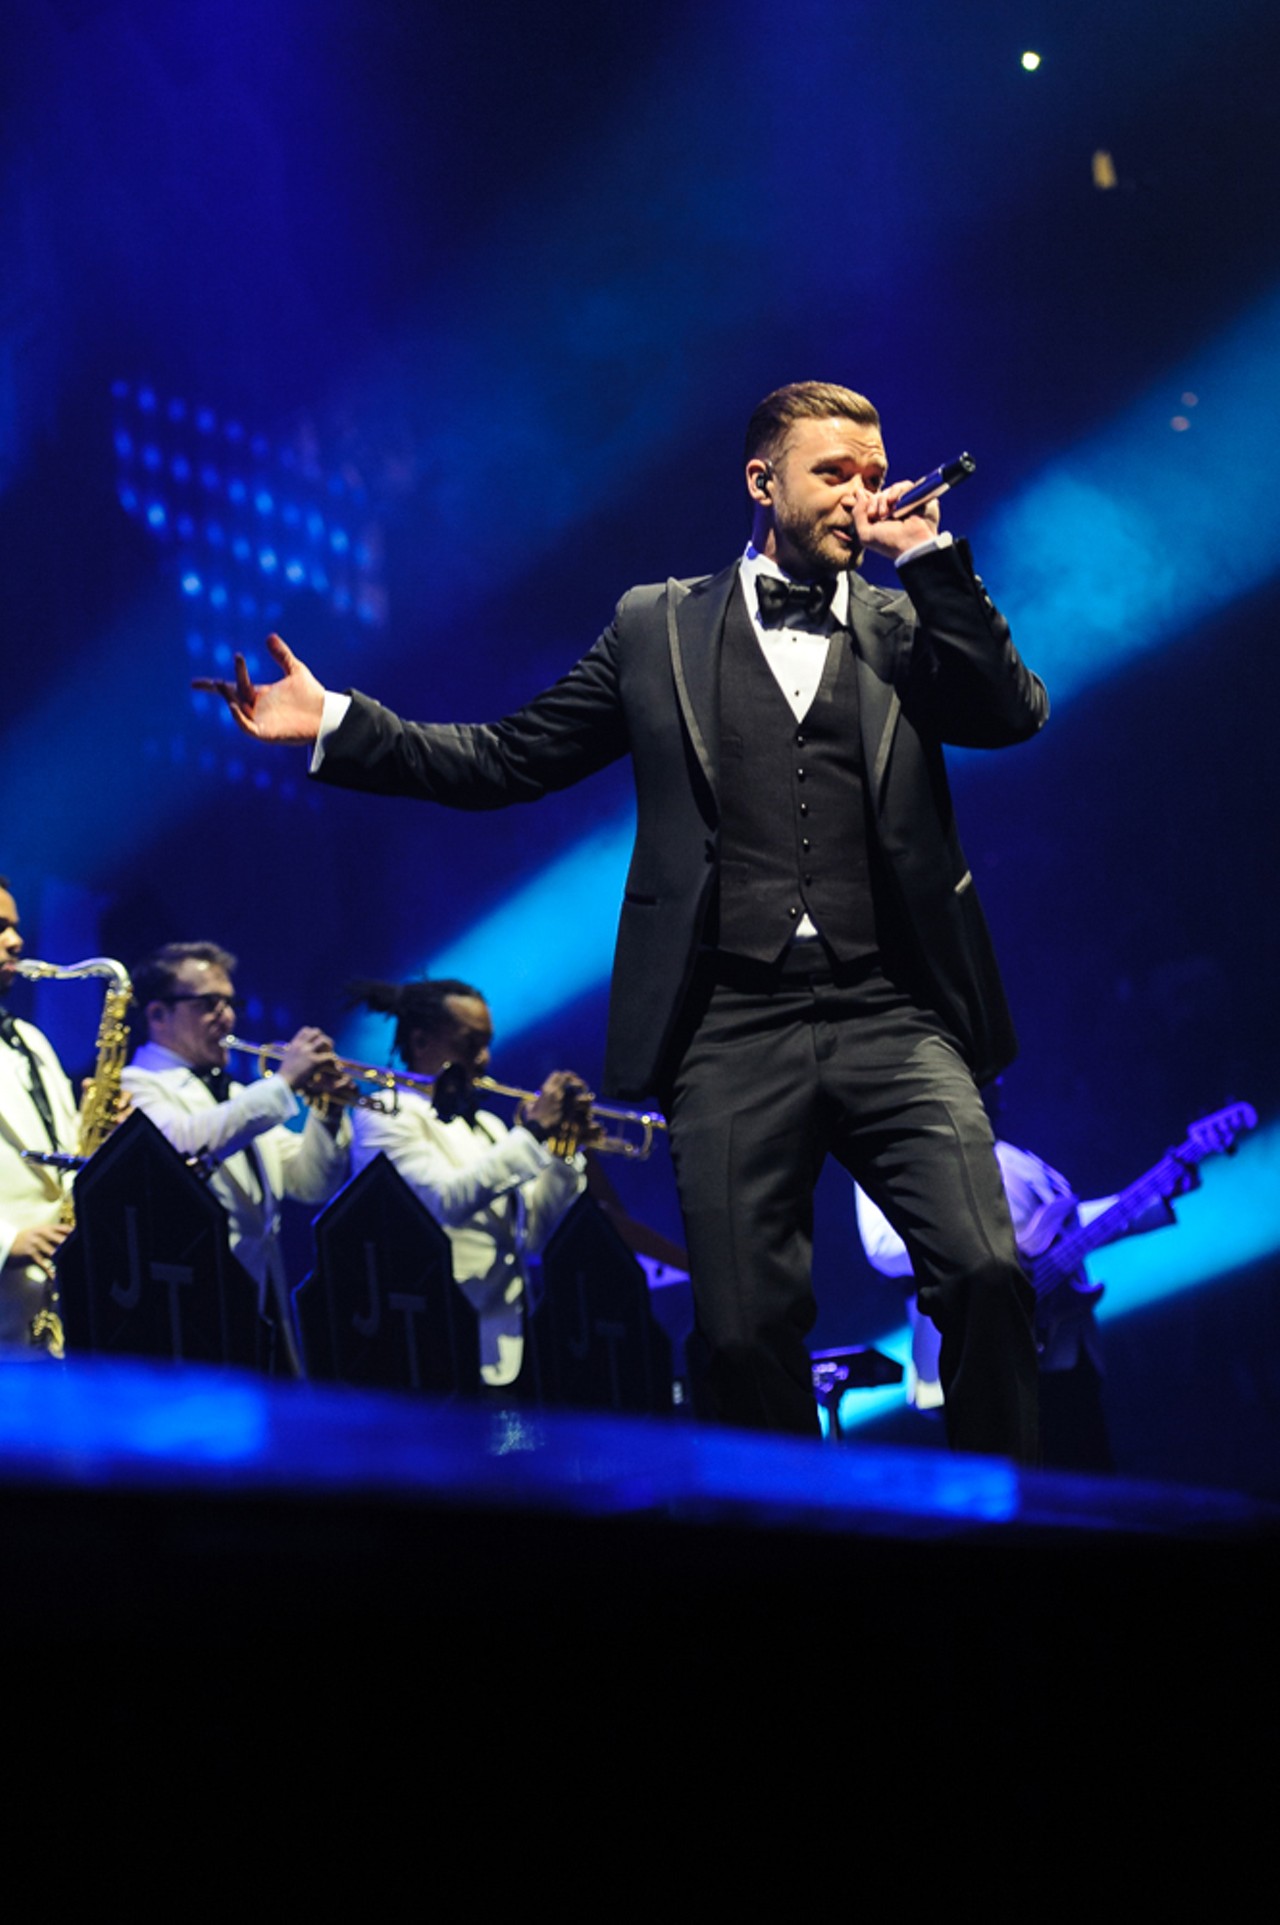 Justin Timberlake in St. Louis